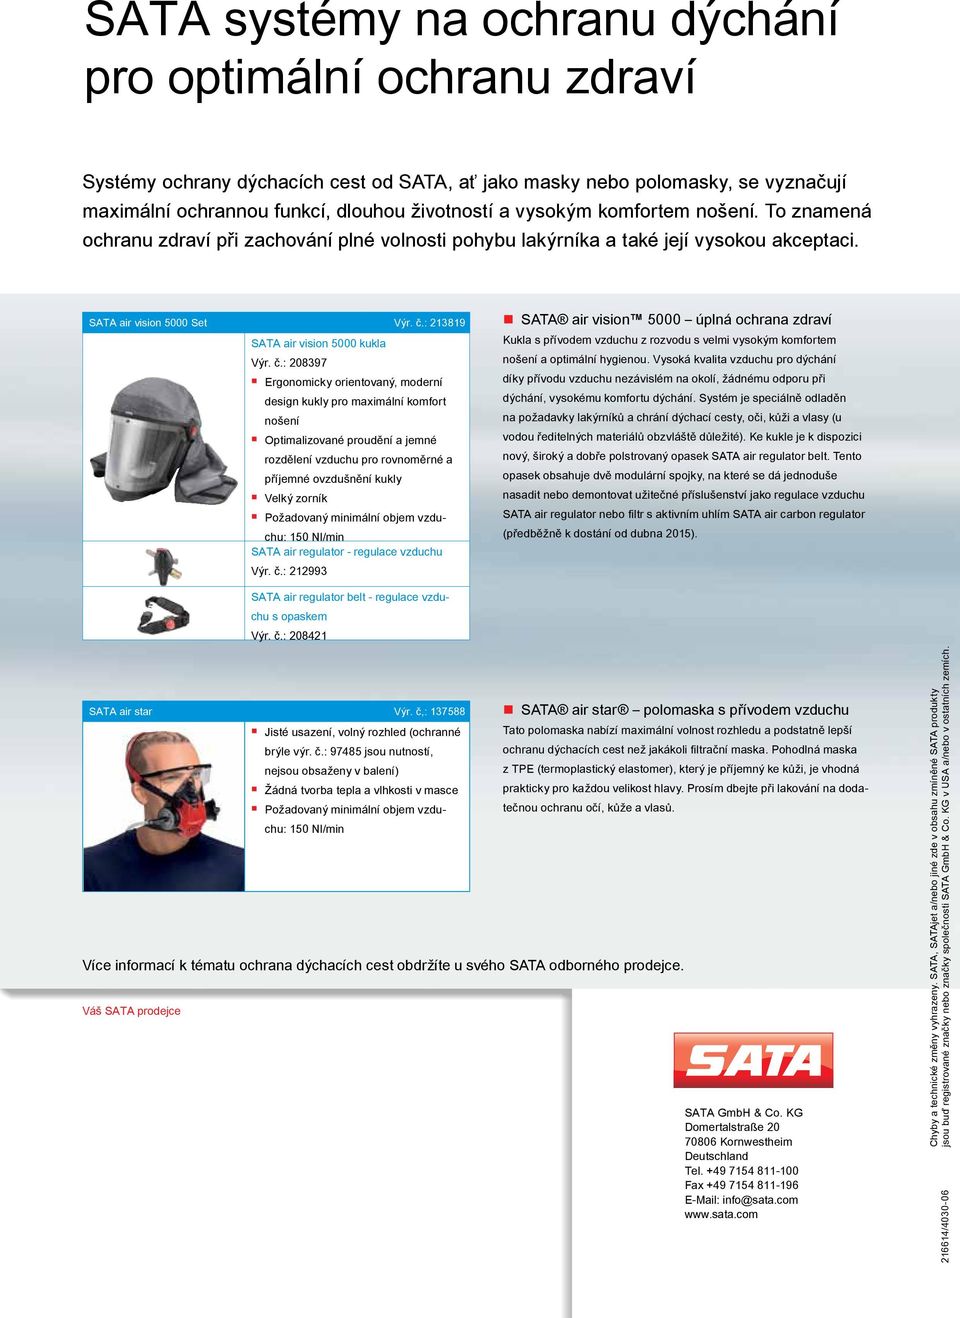 : SATA air vision 000 kukla Výr. č.